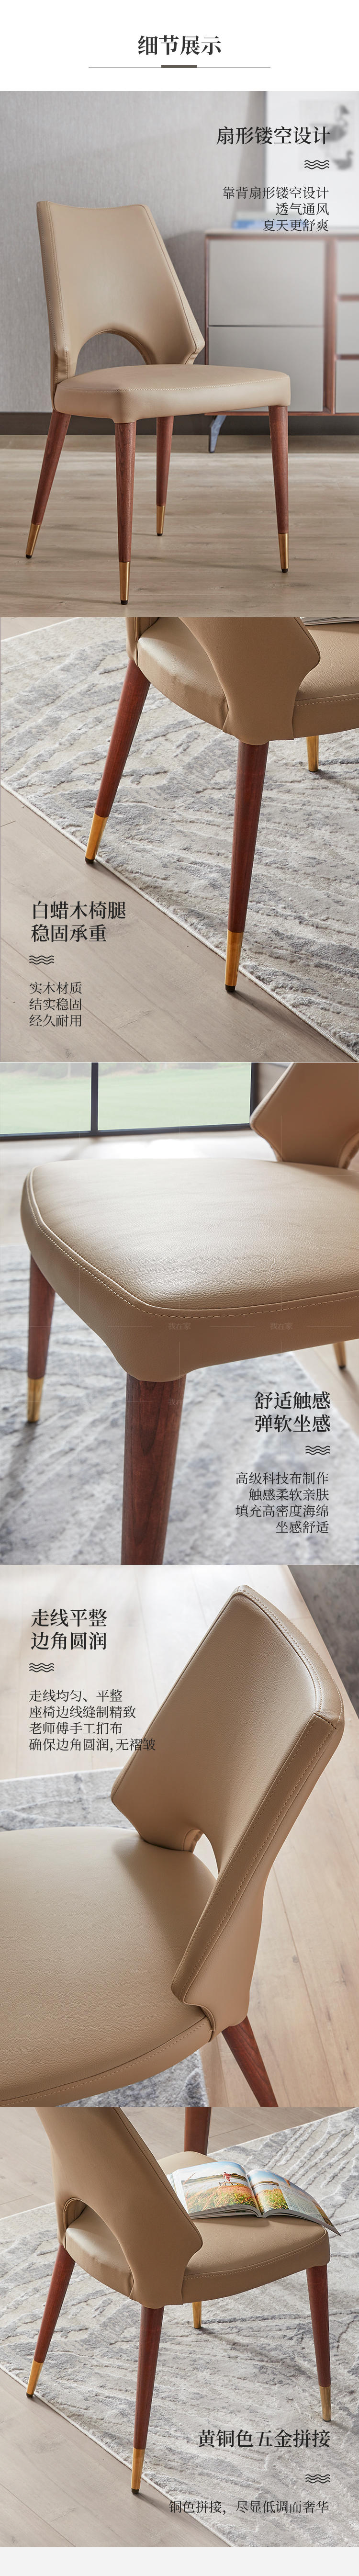 现代简约风格卡利亚餐椅（2把）的家具详细介绍